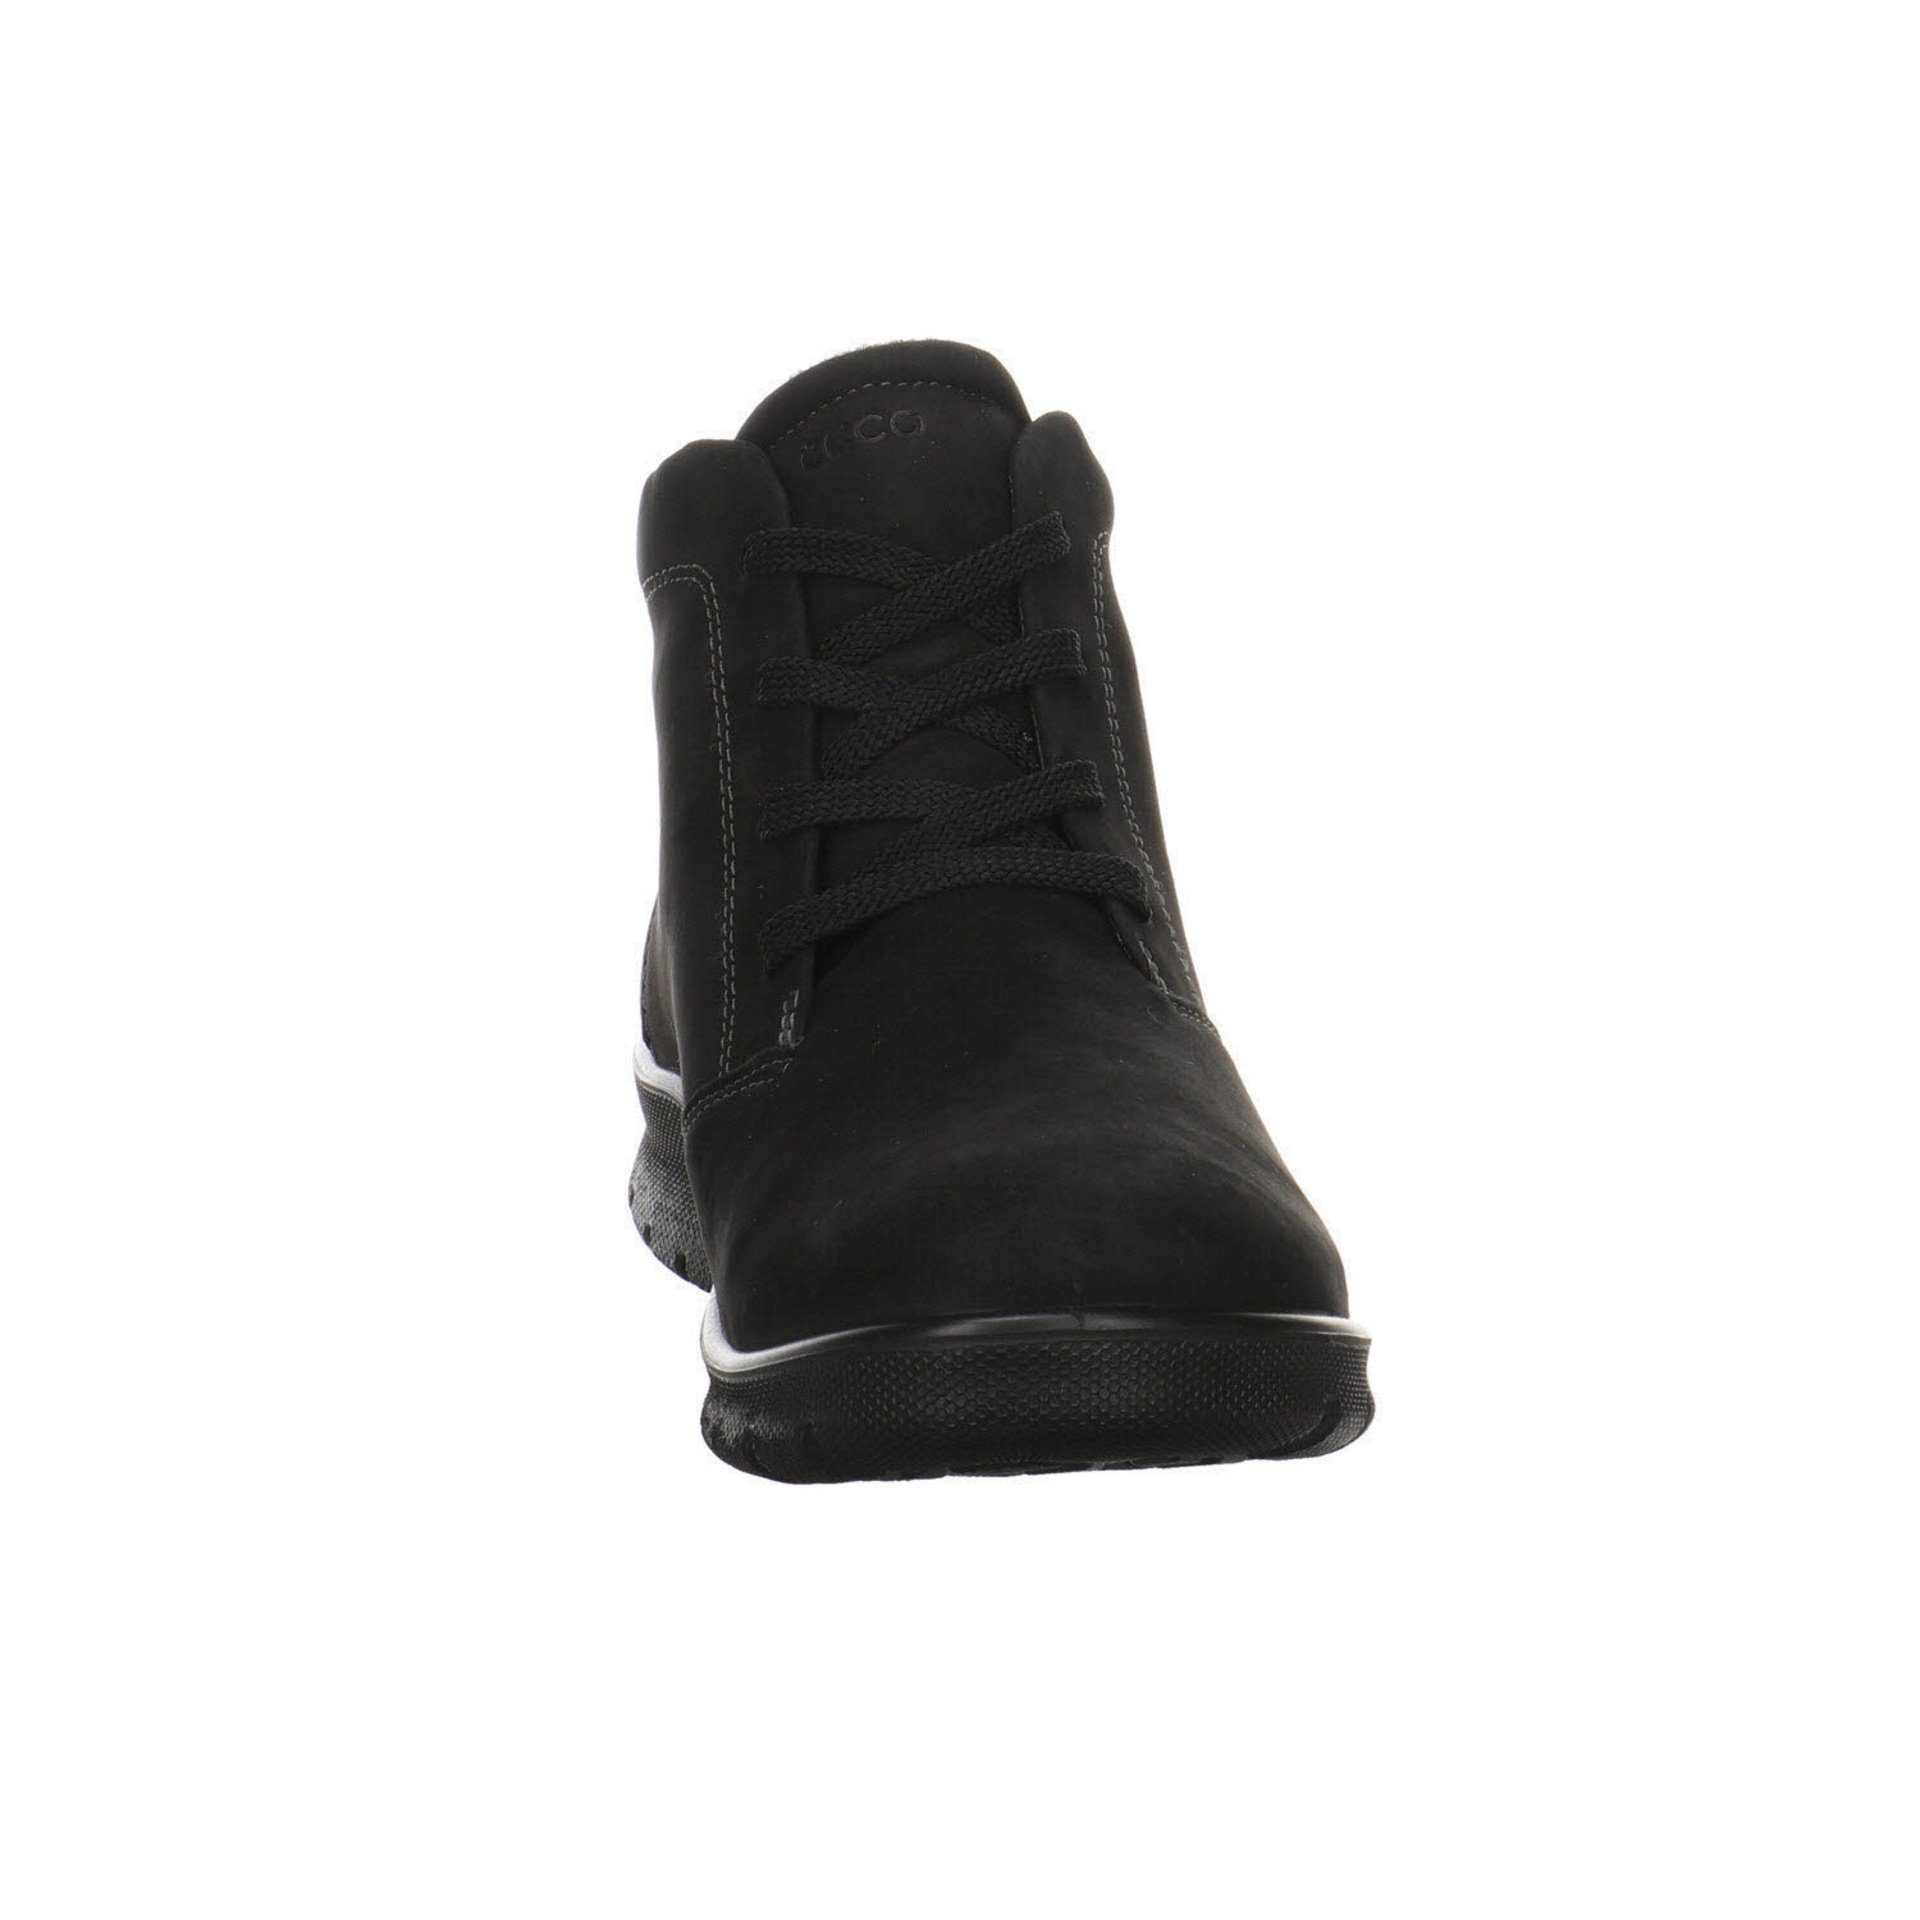 Babett black Boots Stiefeletten Schuhe Damen Ecco Nubukleder Schnürstiefelette